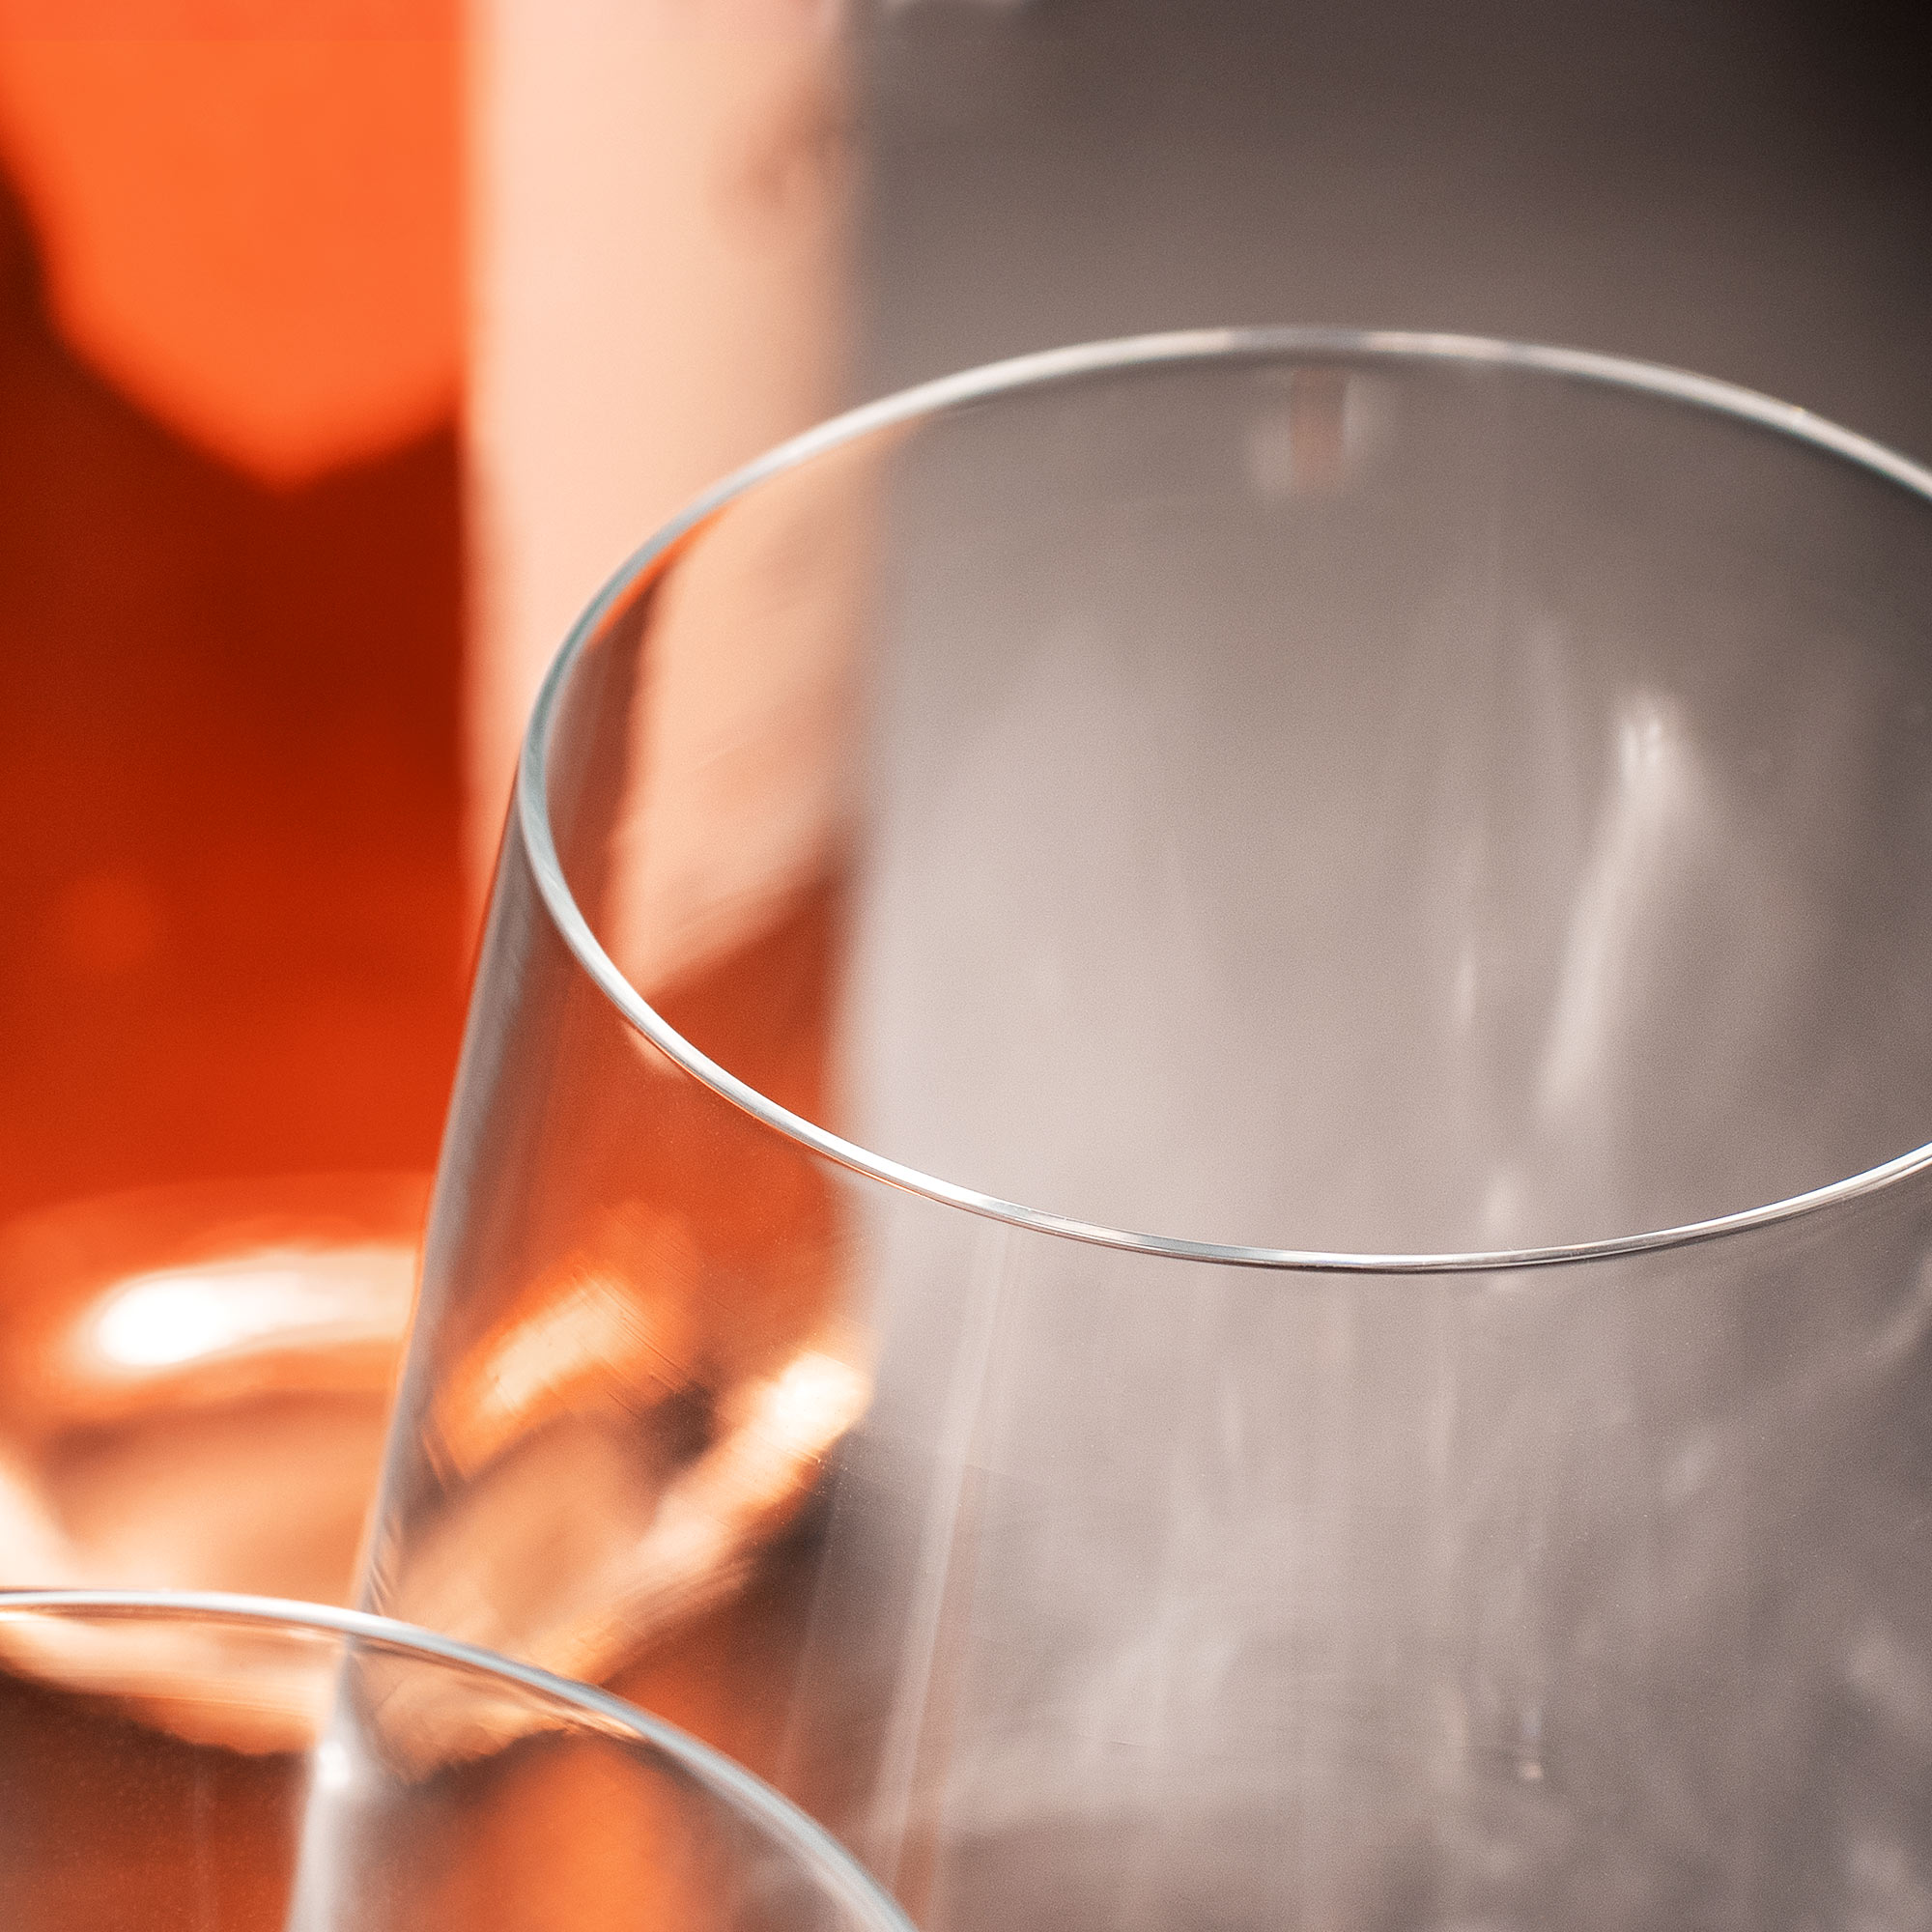 Weinglas - Zu Vino sagt "Name" nie no - Personalisiert